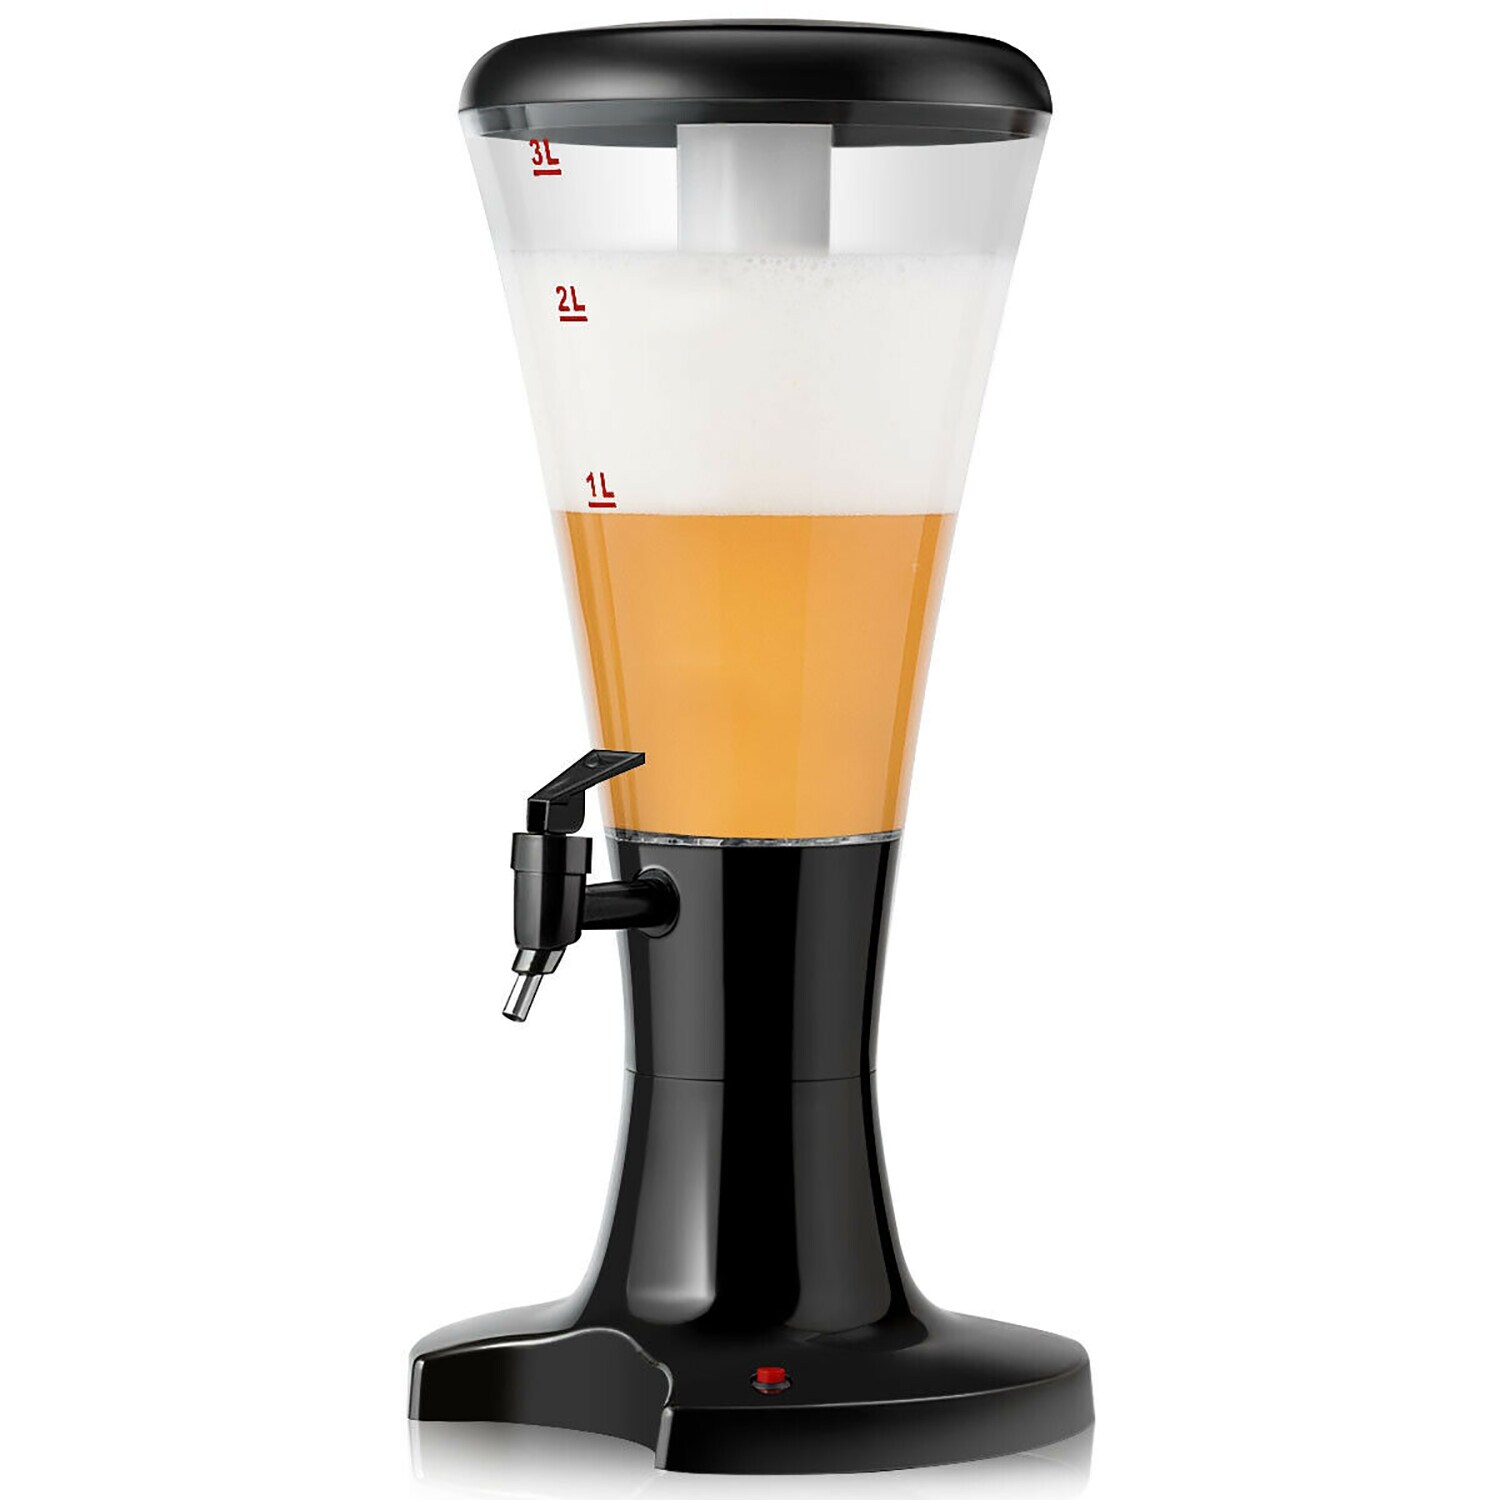 3L Beer Tower Beverage Dispenser - SJNJD461 - IdeaStage Promotional Products